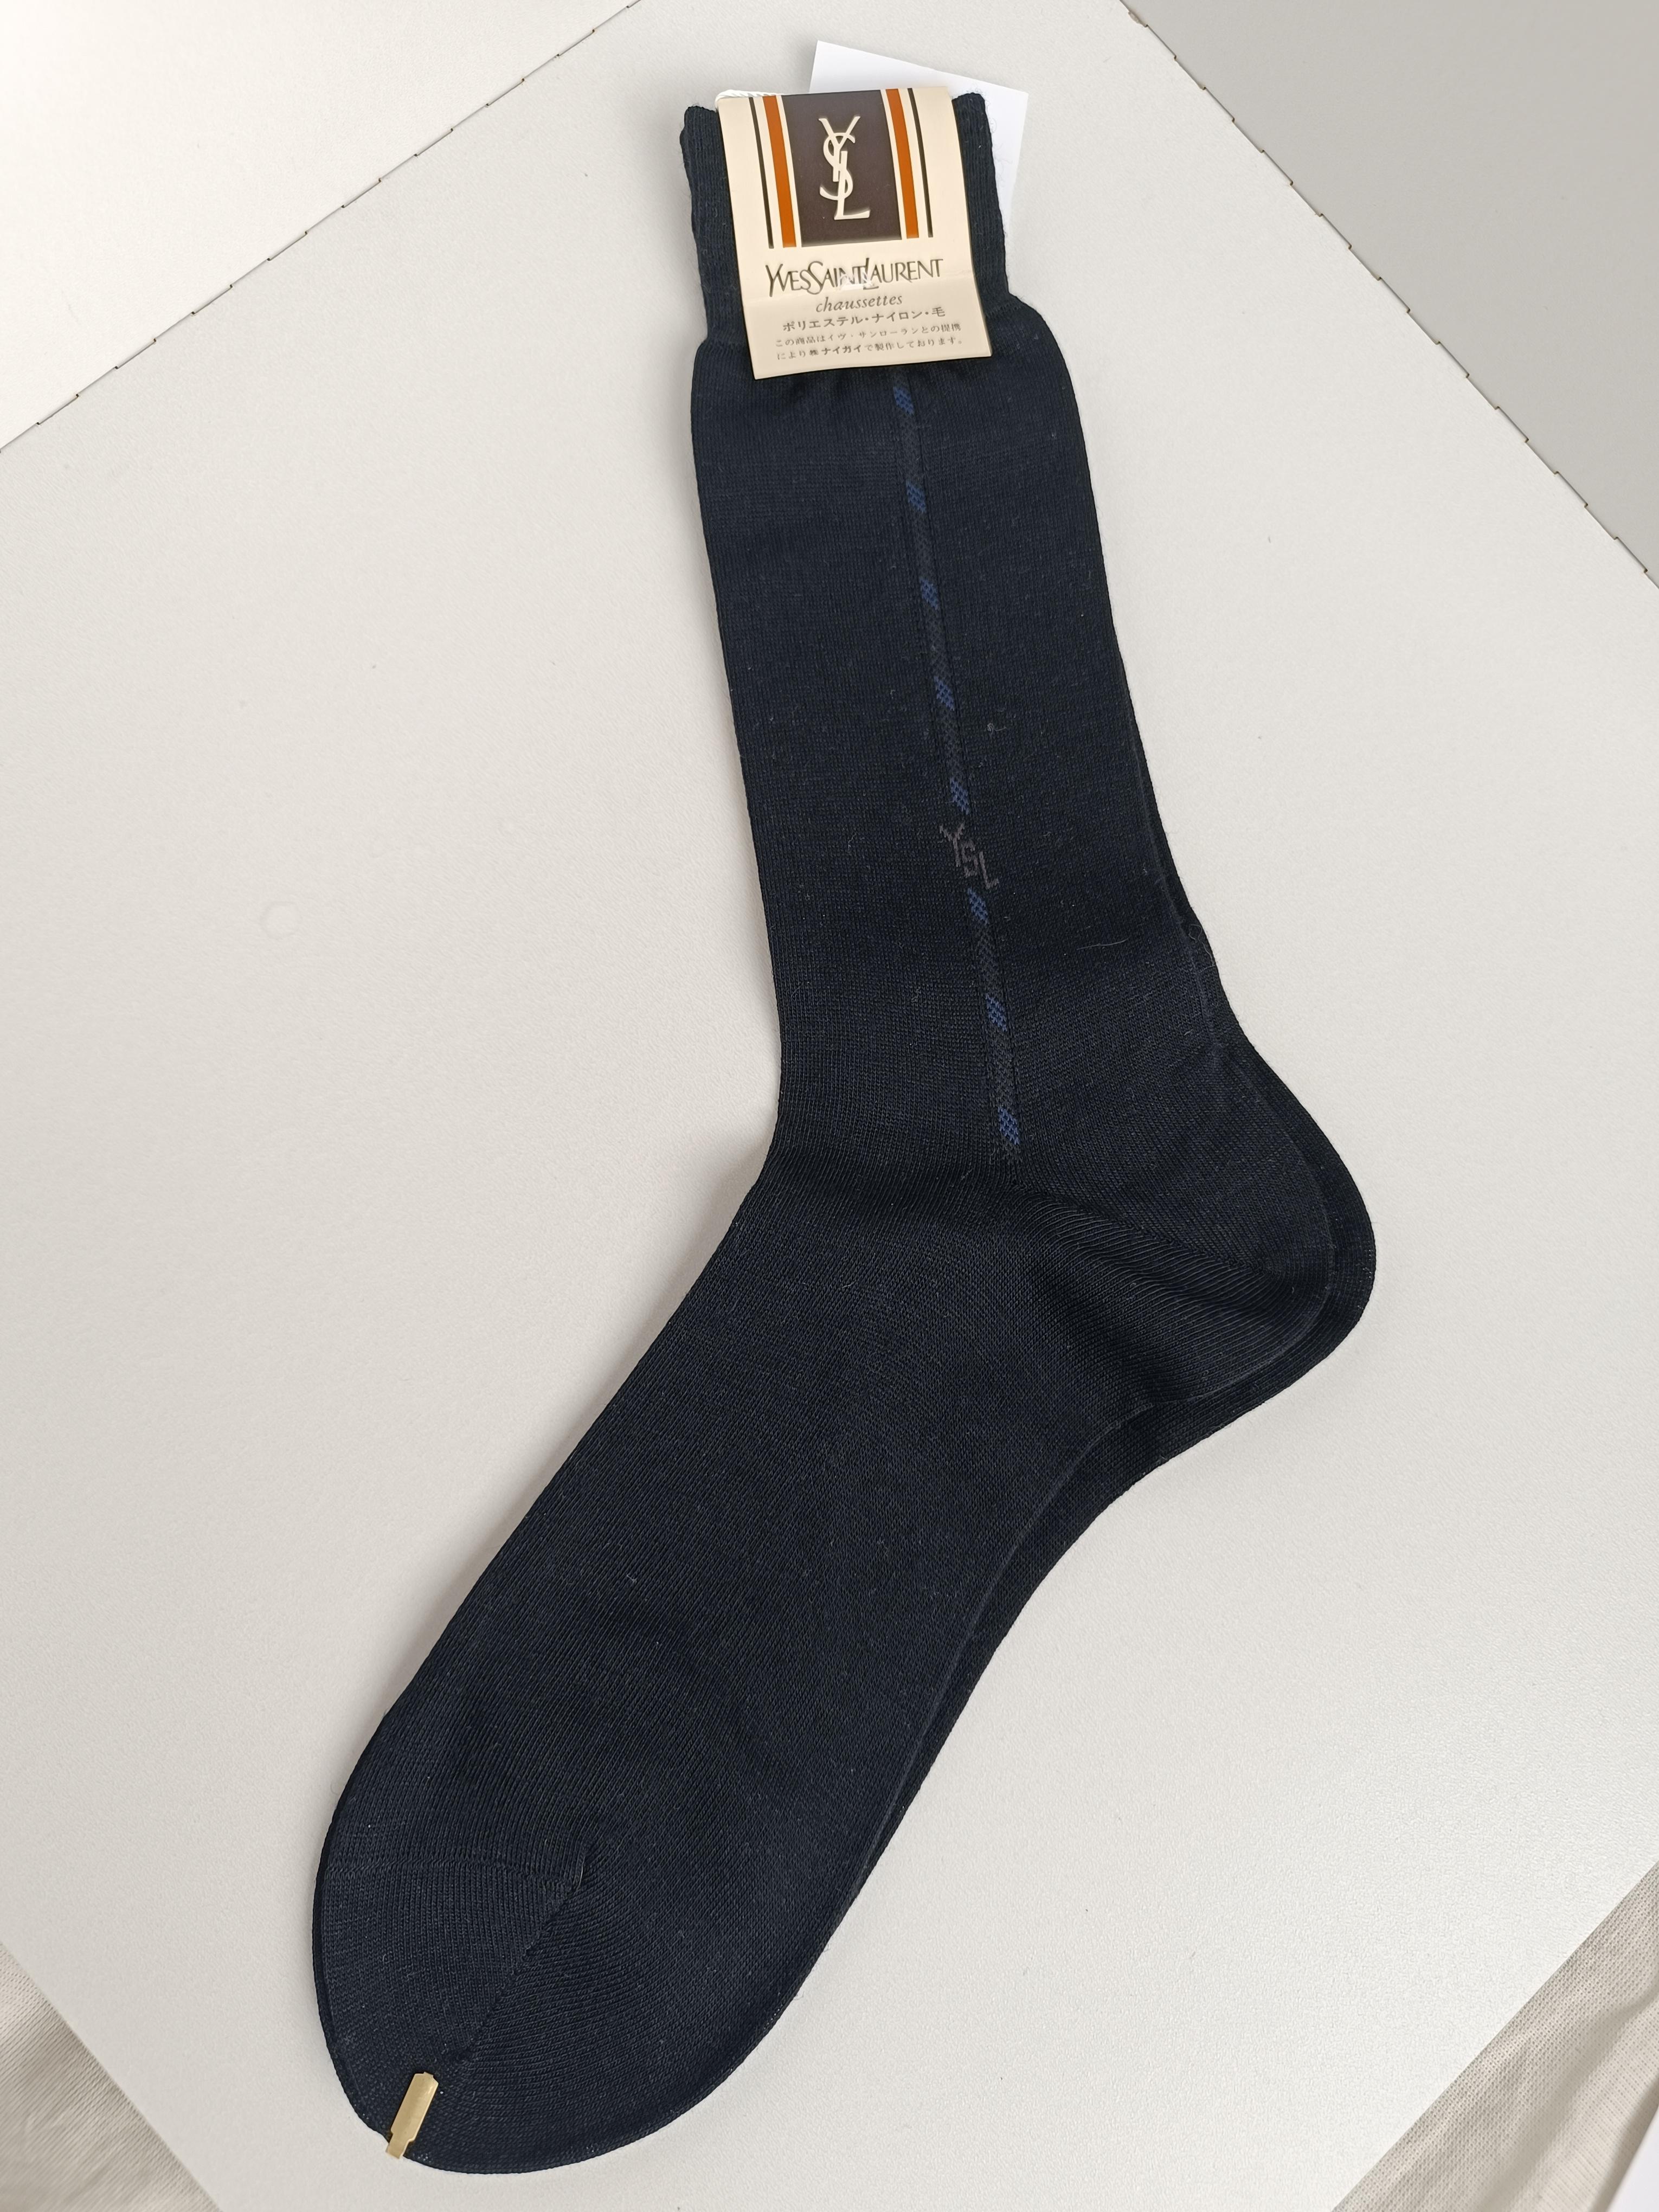 Authentique chaussettes pour hommes Yves Saint Laurent Vintage
Pays de fabrication : Japon
Couleur : Noir
Unisexe.
Il est idéal à porter ou à offrir !
Nous nous efforçons d'assurer un contrôle de qualité élevé, et les défauts plus importants seront